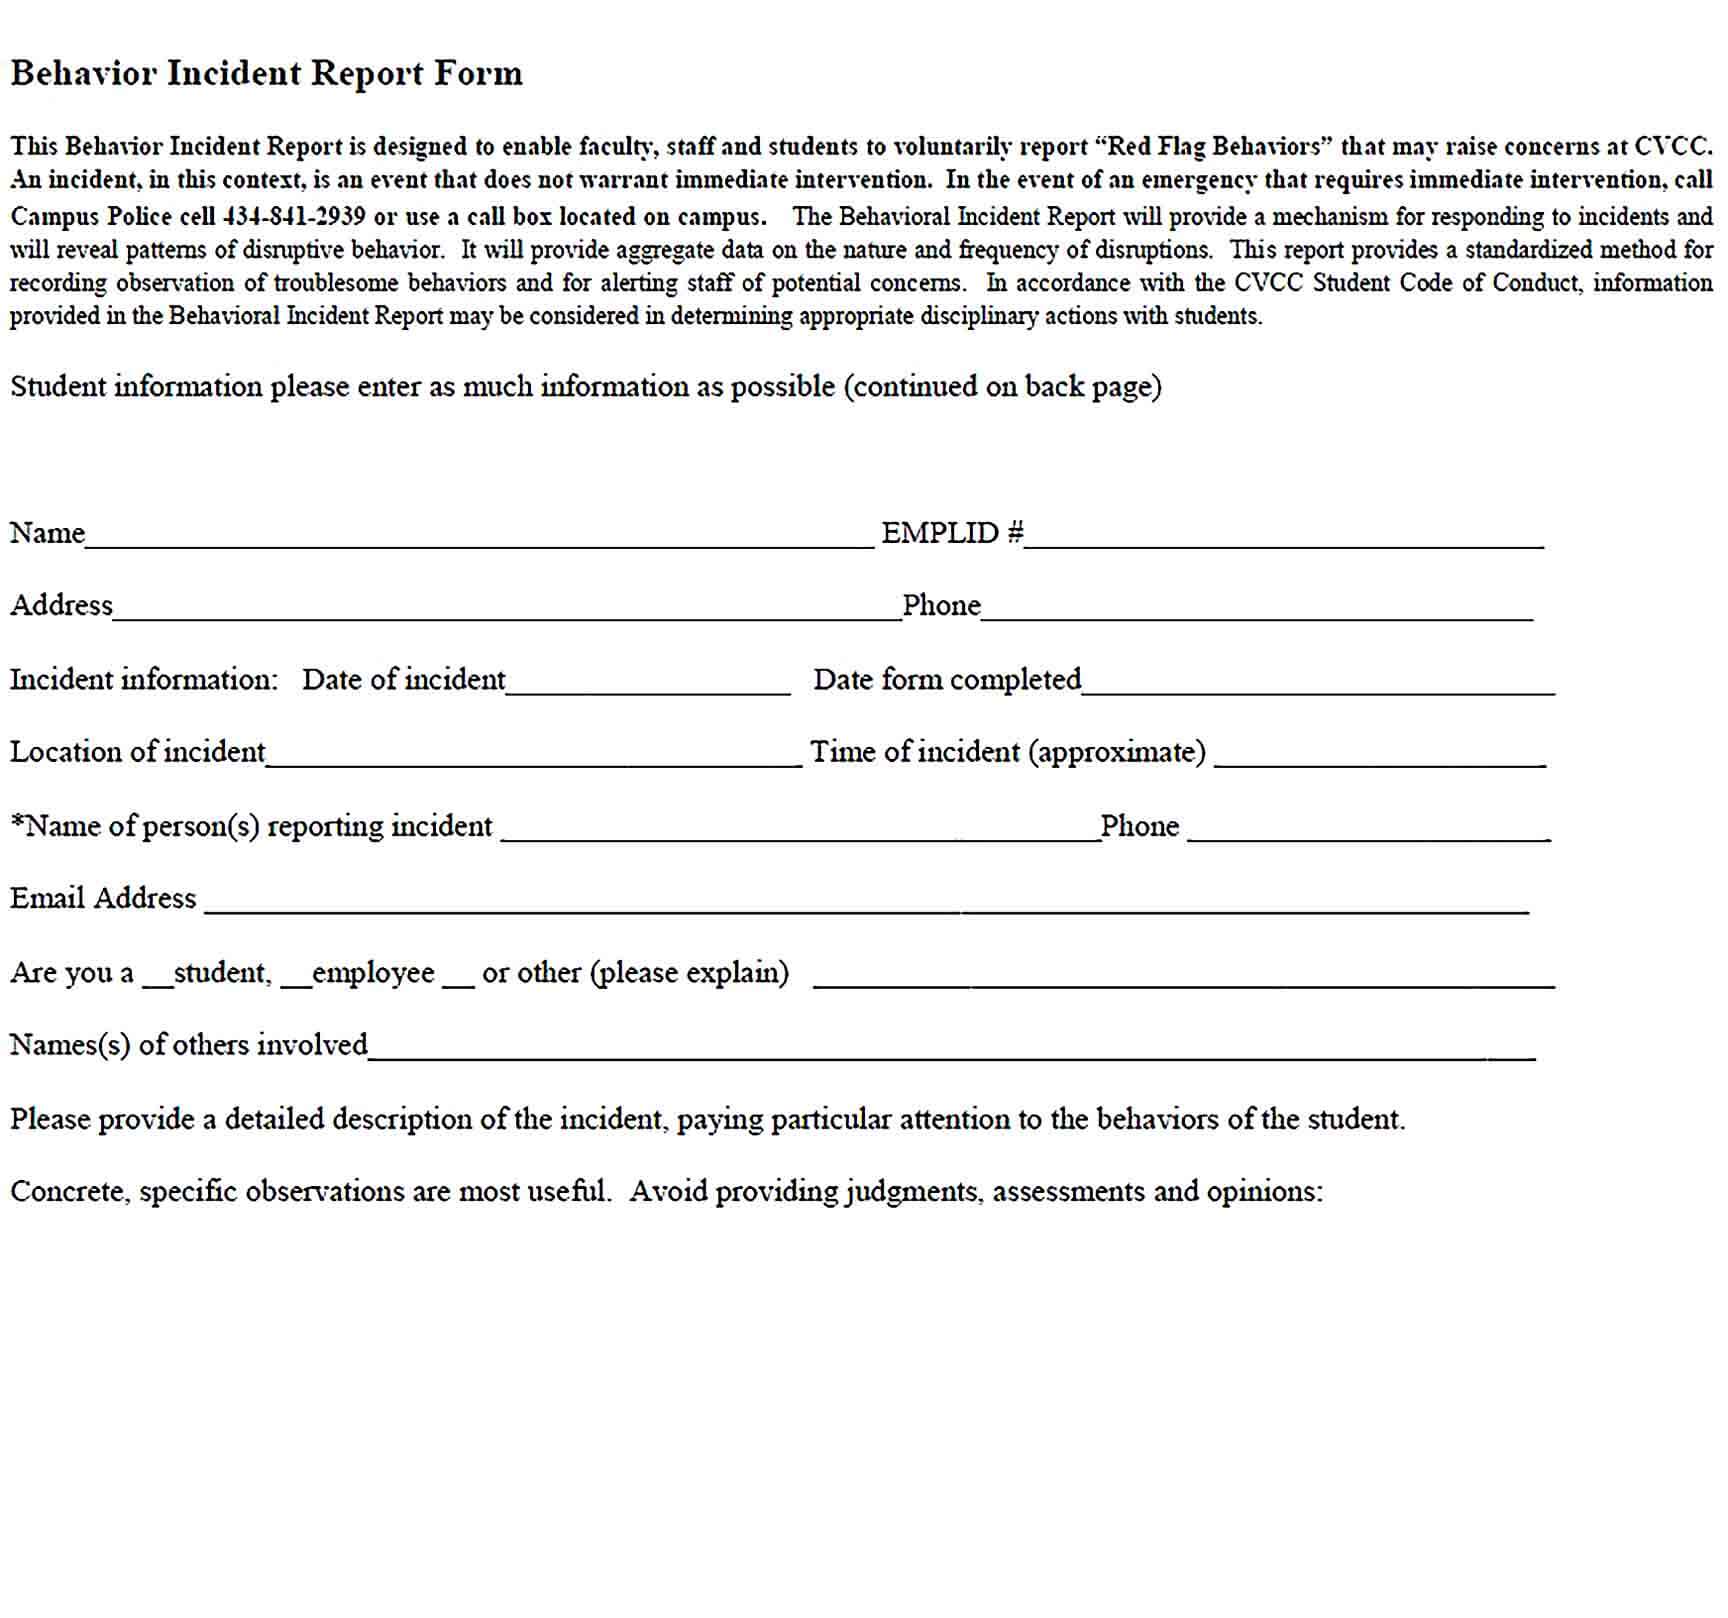 Sample Behavior Incident Report Form